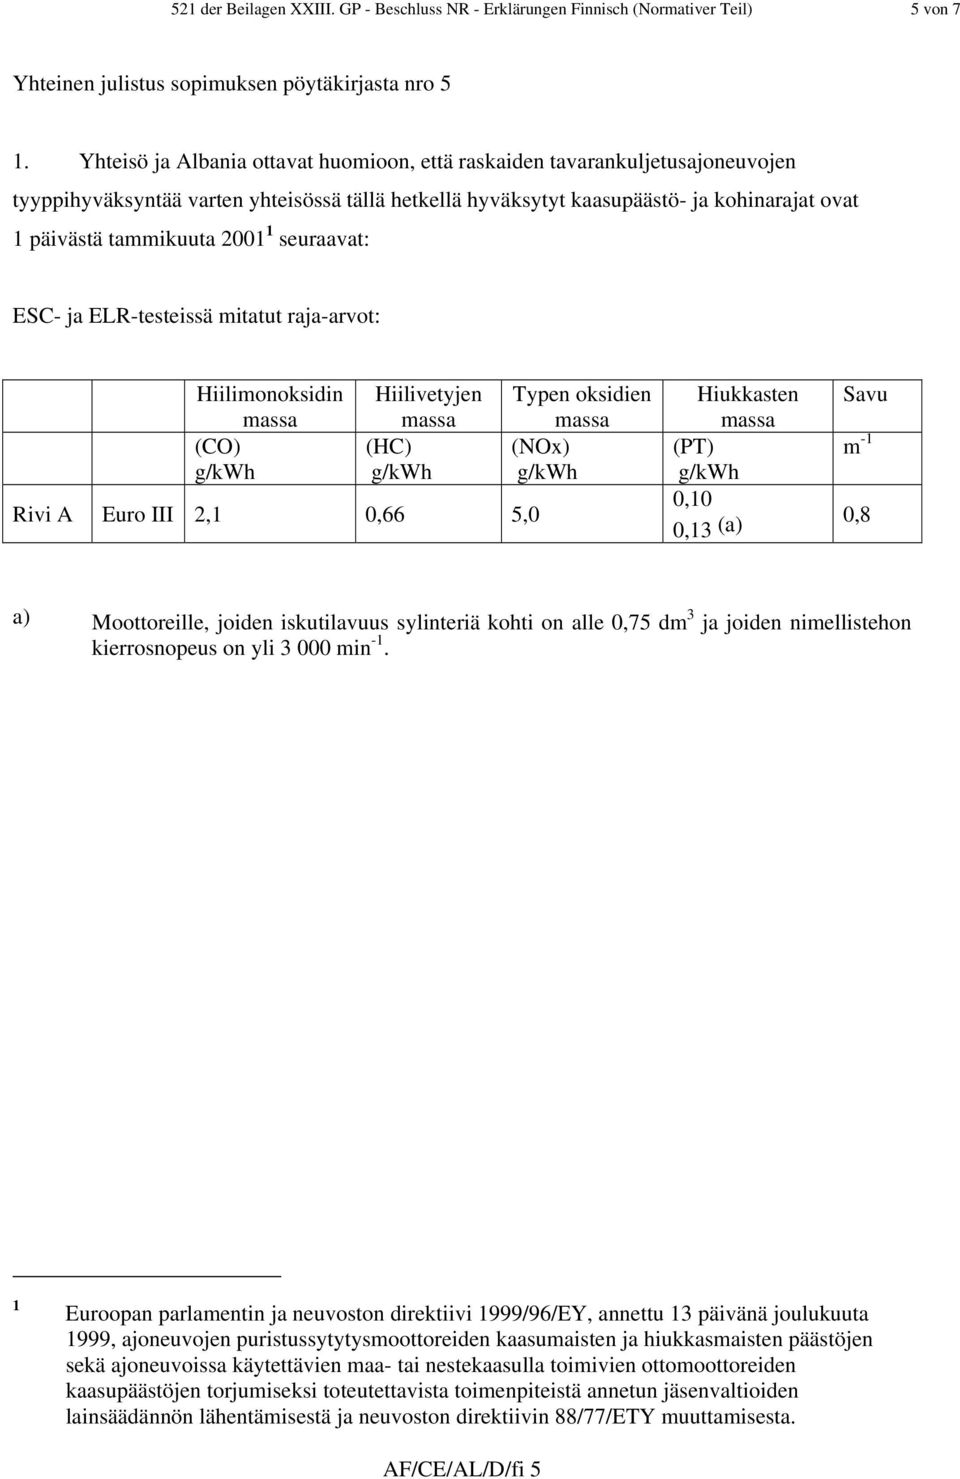 2001 1 seuraavat: ESC- ja ELR-testeissä mitatut raja-arvot: Hiilimonoksidin (CO) Hiilivetyjen (HC) Rivi A Euro III 2,1 0,66 5,0 Typen oksidien (NOx) Hiukkasten (PT) 0,10 0,13 (a) Savu m -1 0,8 a)